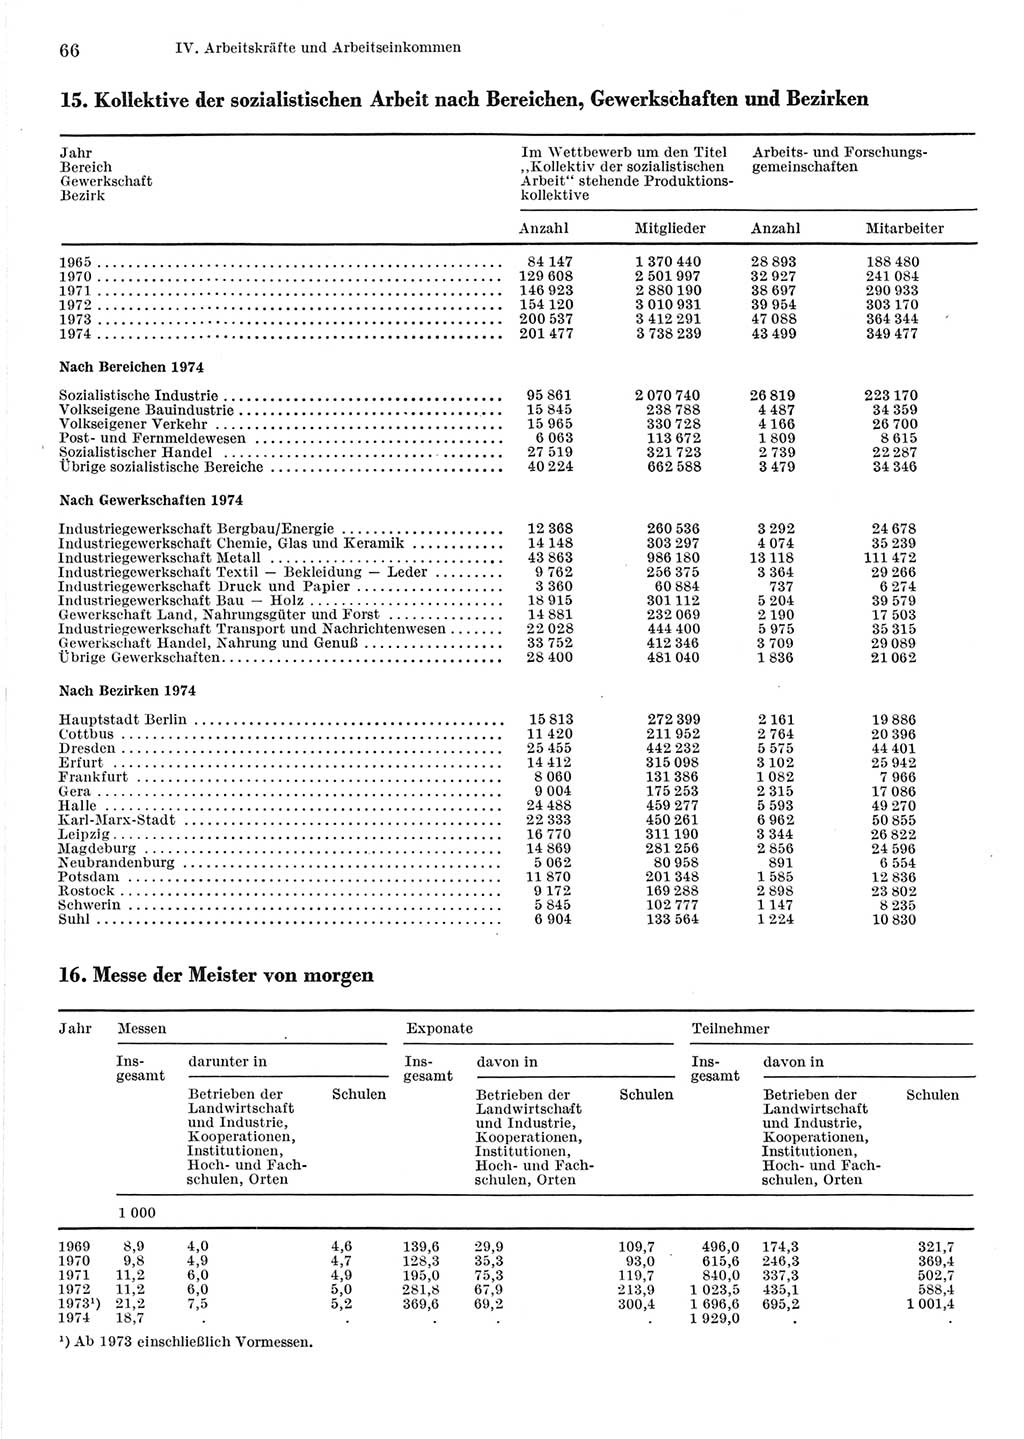 Statistisches Jahrbuch der Deutschen Demokratischen Republik (DDR) 1975, Seite 66 (Stat. Jb. DDR 1975, S. 66)